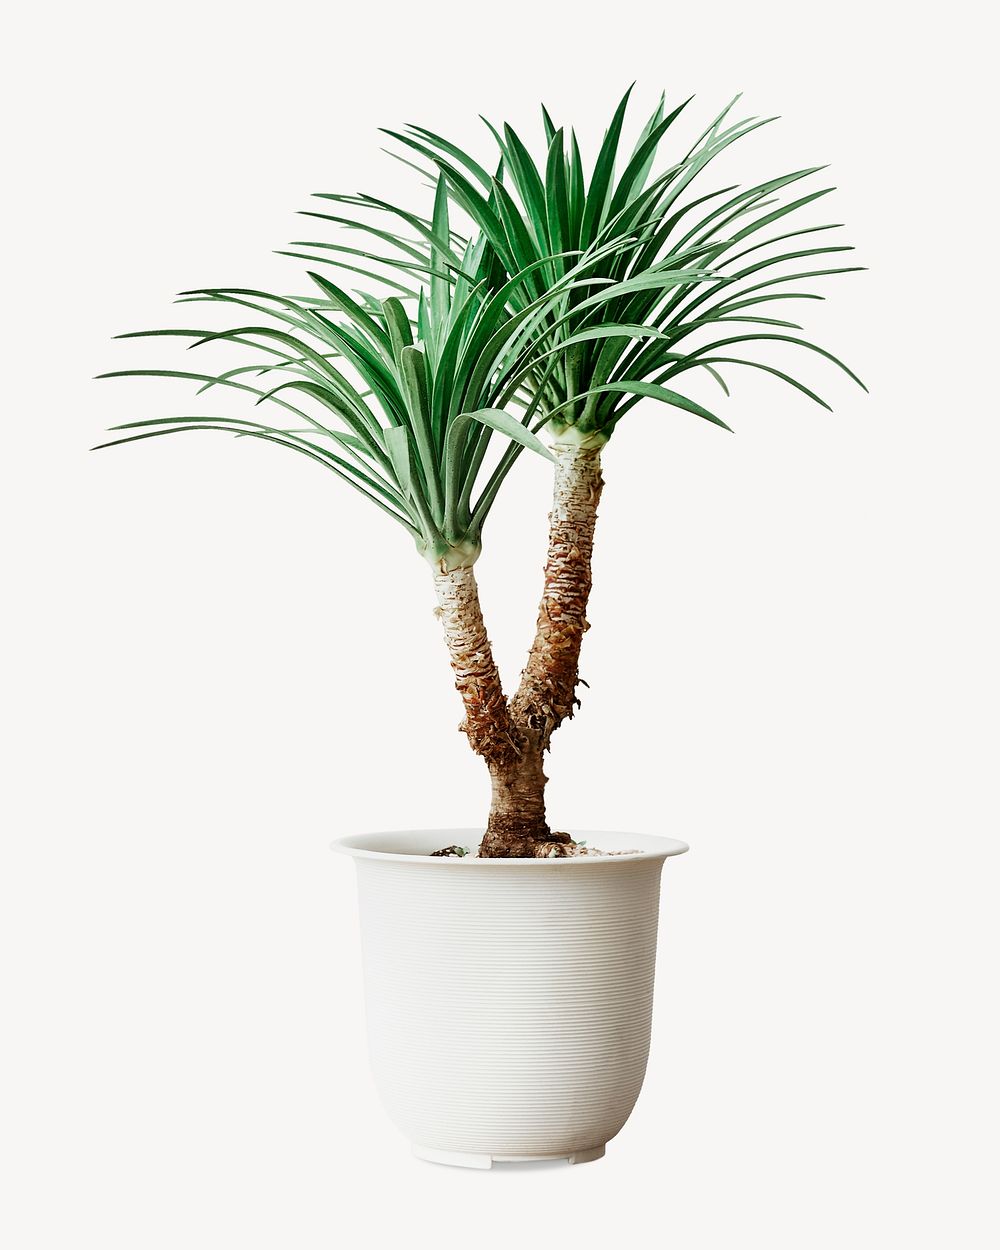 Agave palm tree, isolated botanical image psd